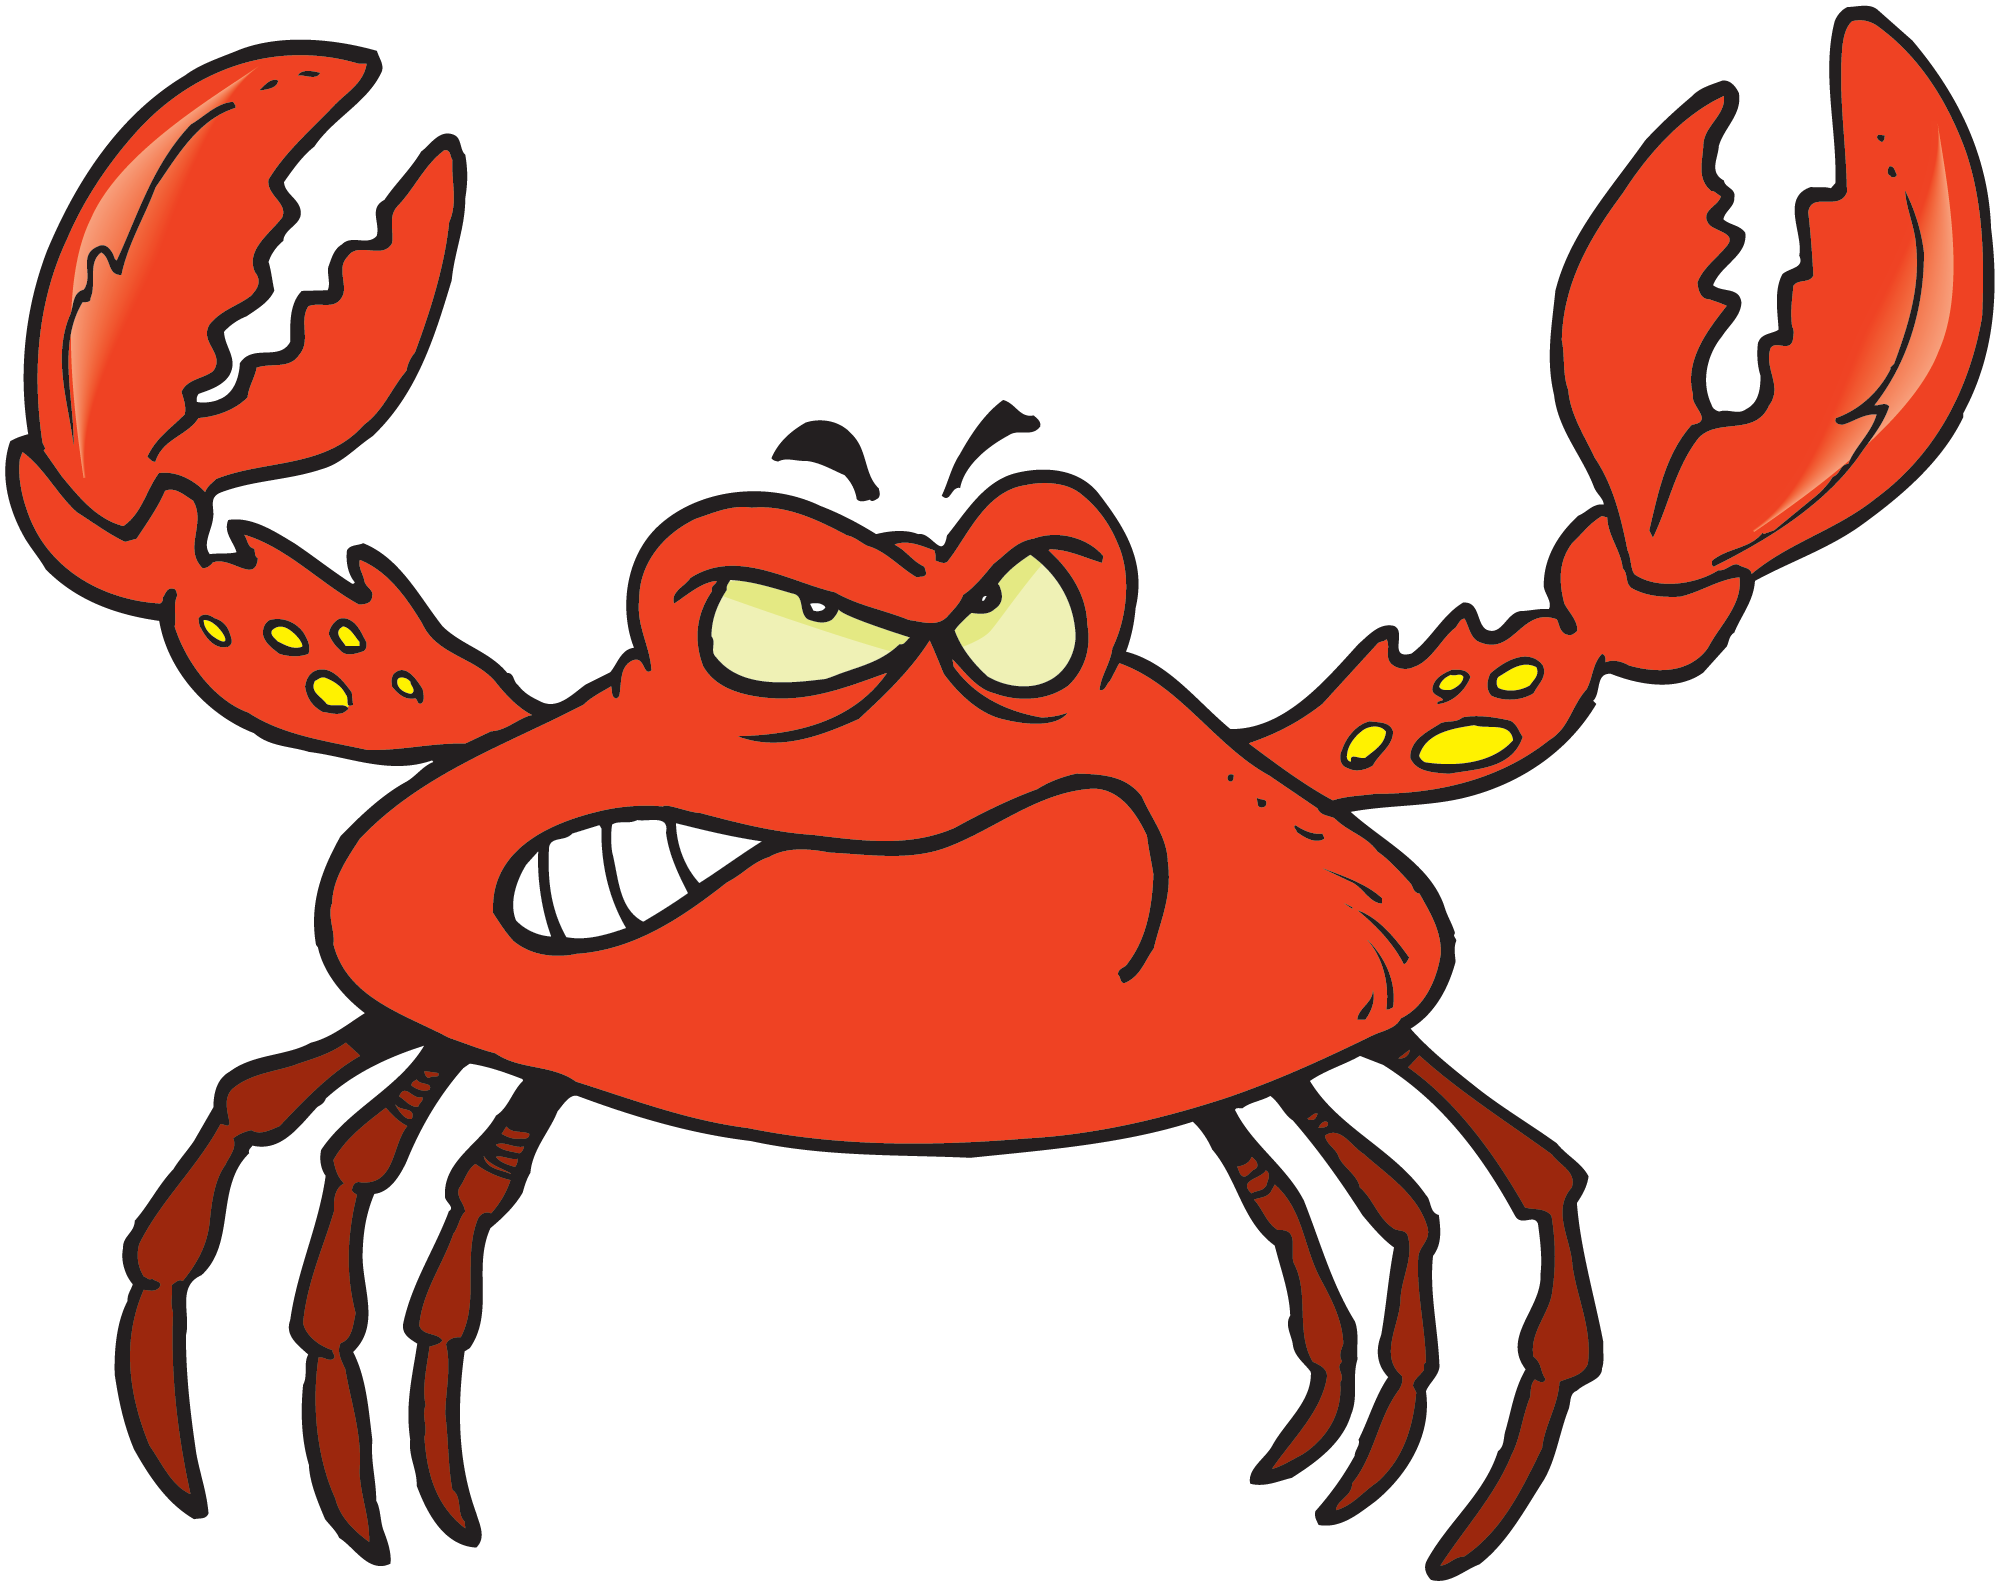 Crab Image PNG HD - 126085